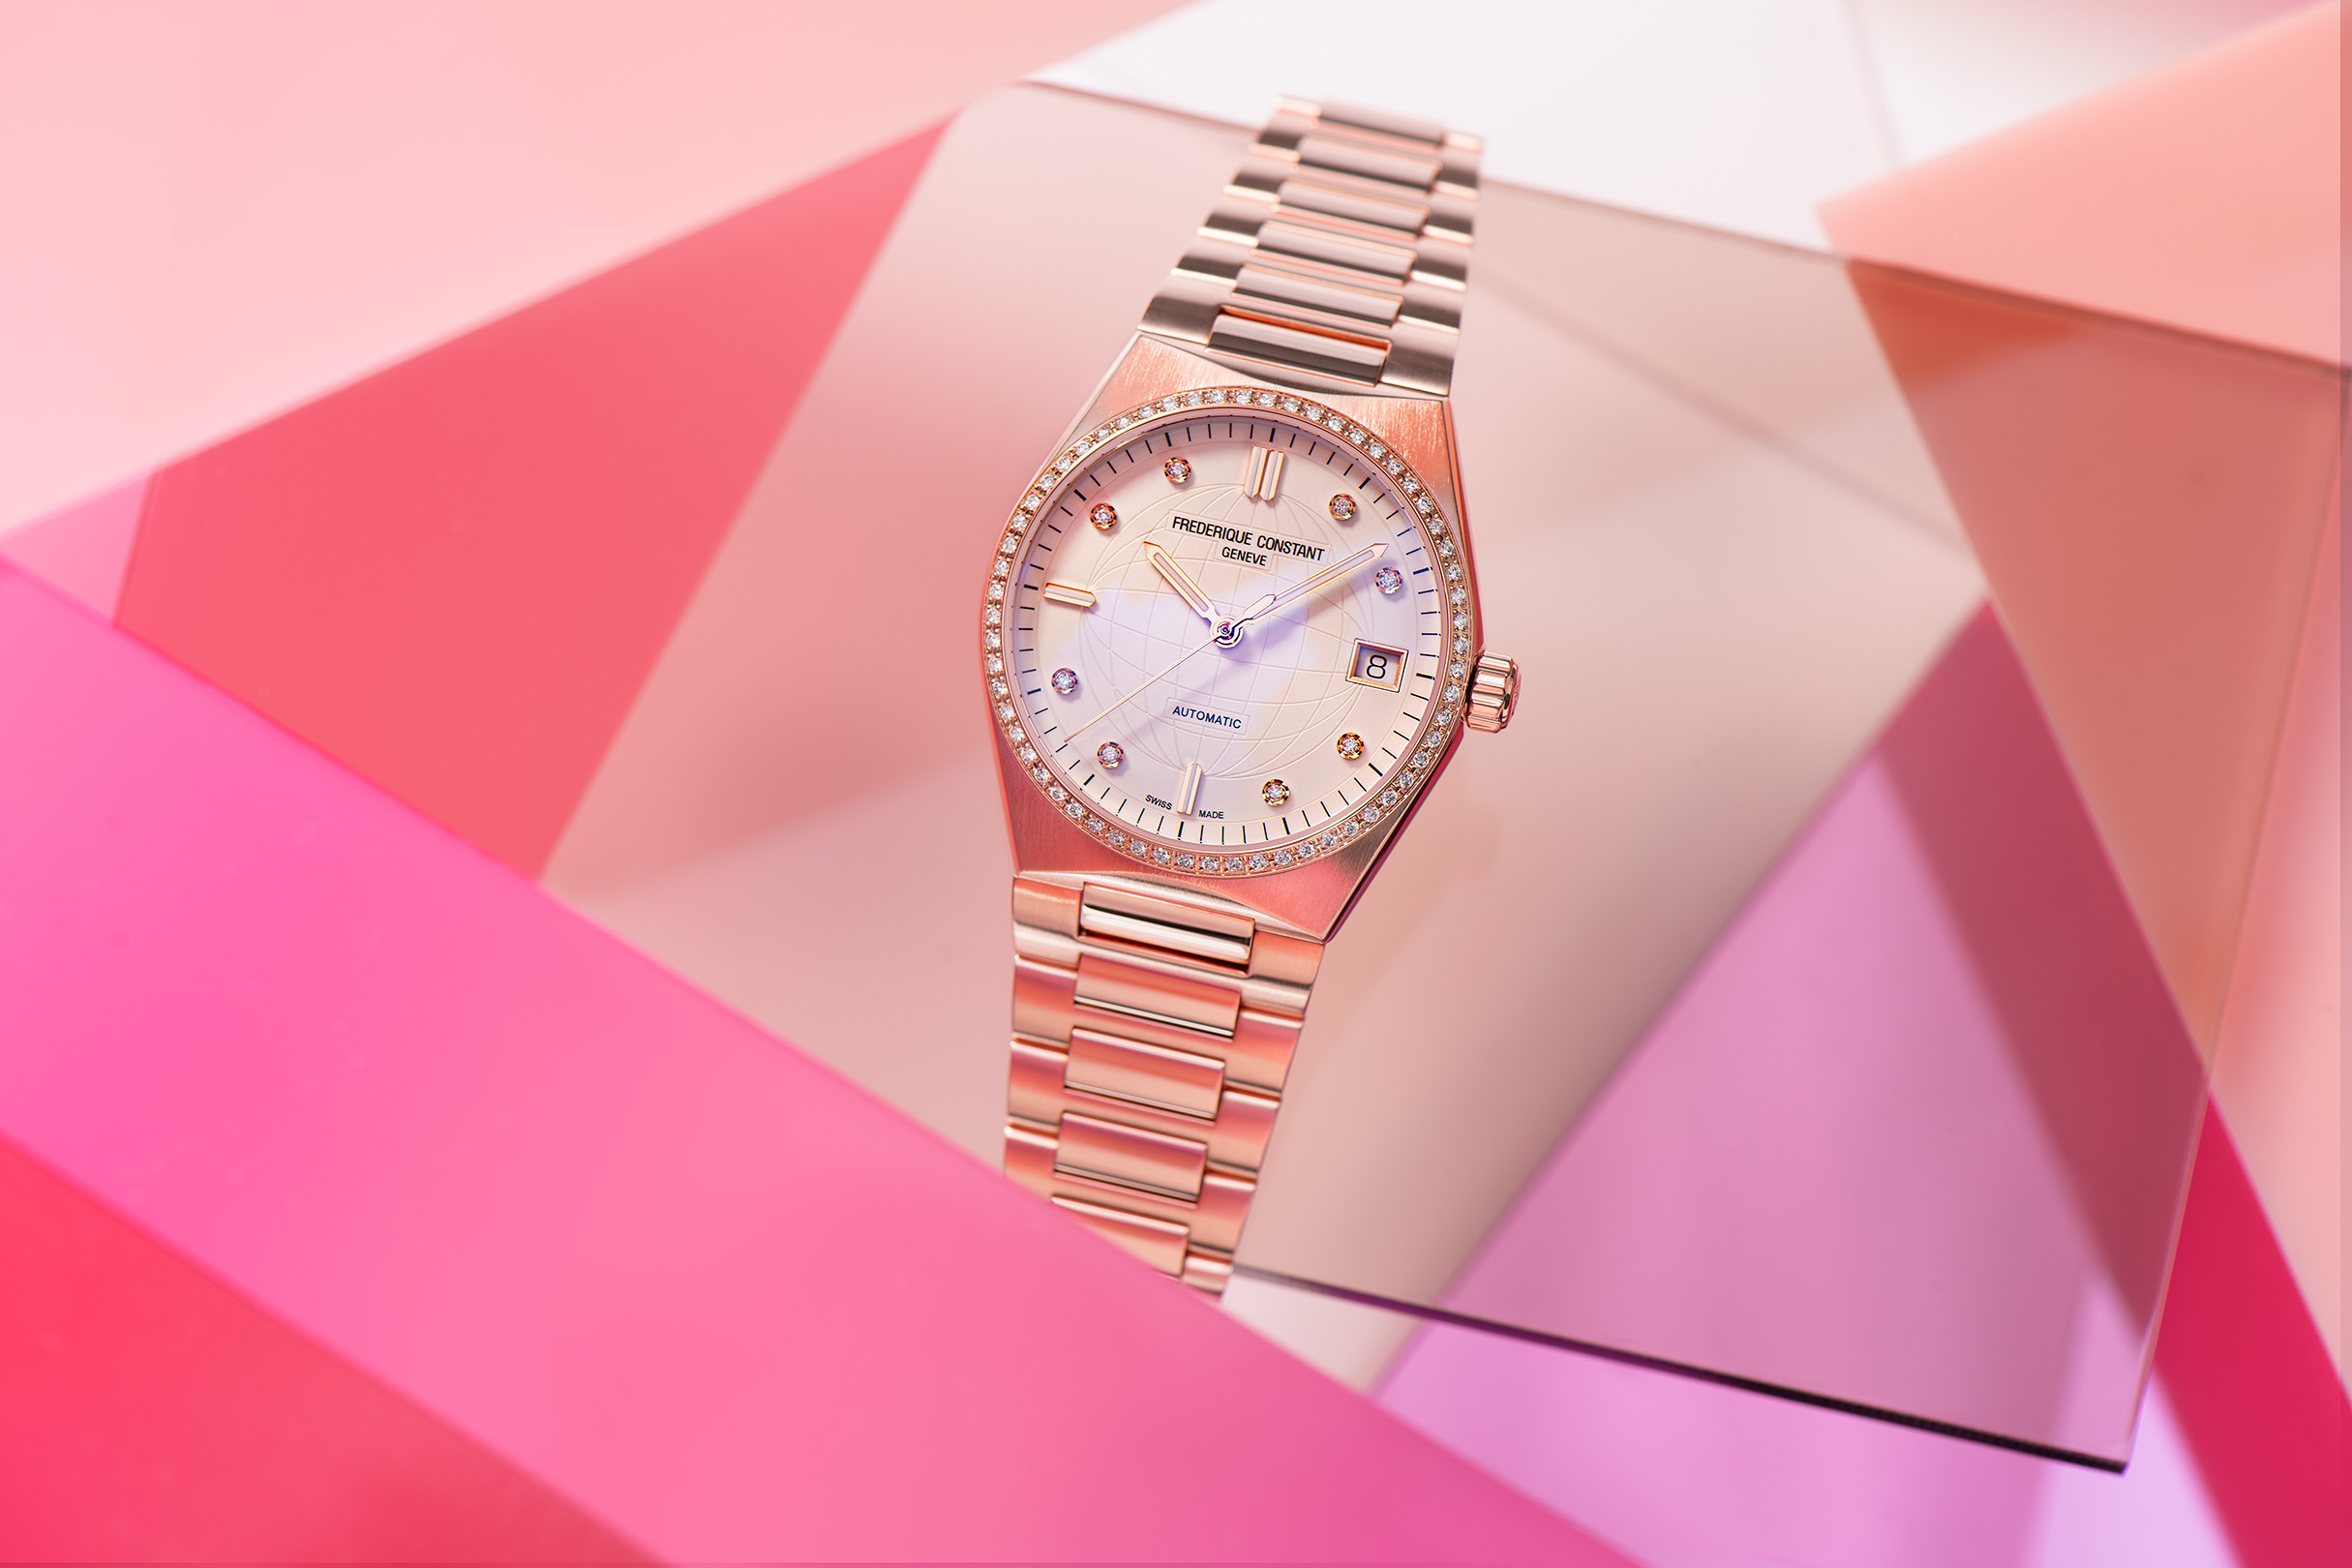 Frederique Constant è una manifattura orologiera svizzera, fondata nel 1988.Il brand crea orologi di lusso dedicati ad un pubblico femminile.